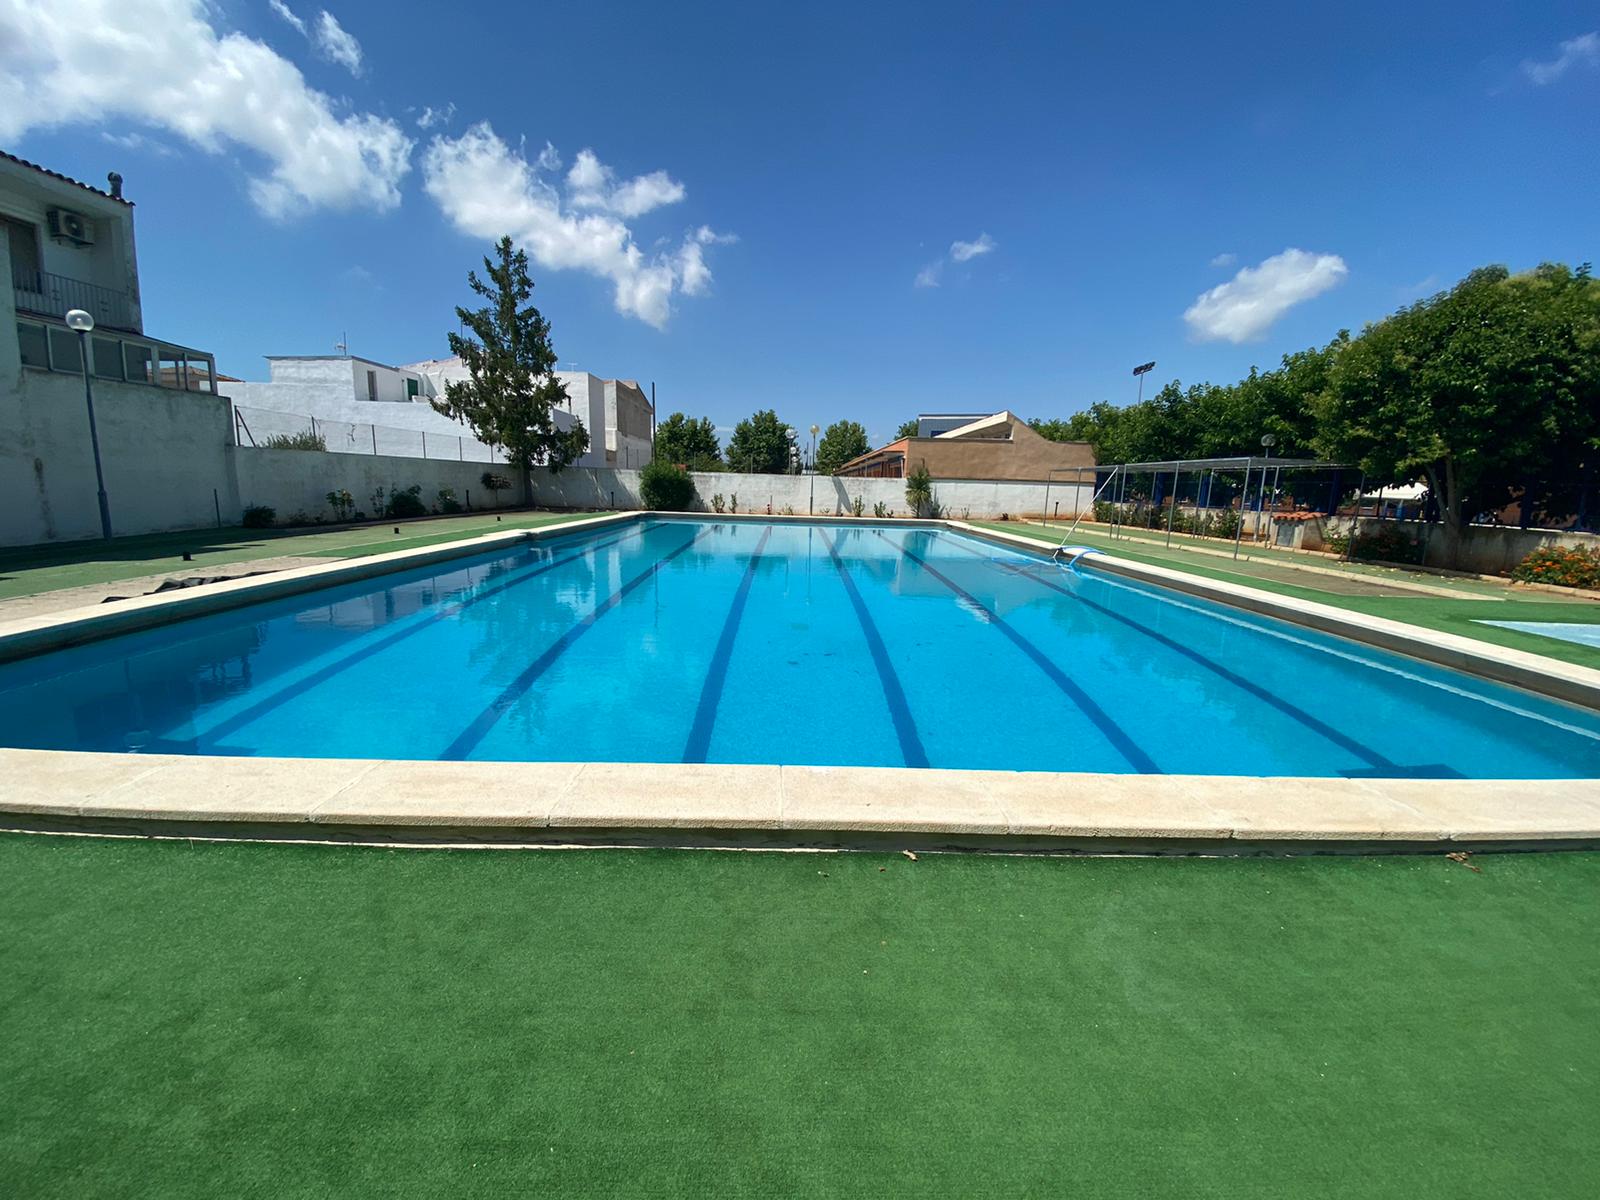 La piscina municipal d'Alcalà es prepara per a obrir el 23 de juny aplicant un protocol de seguretat i higiene